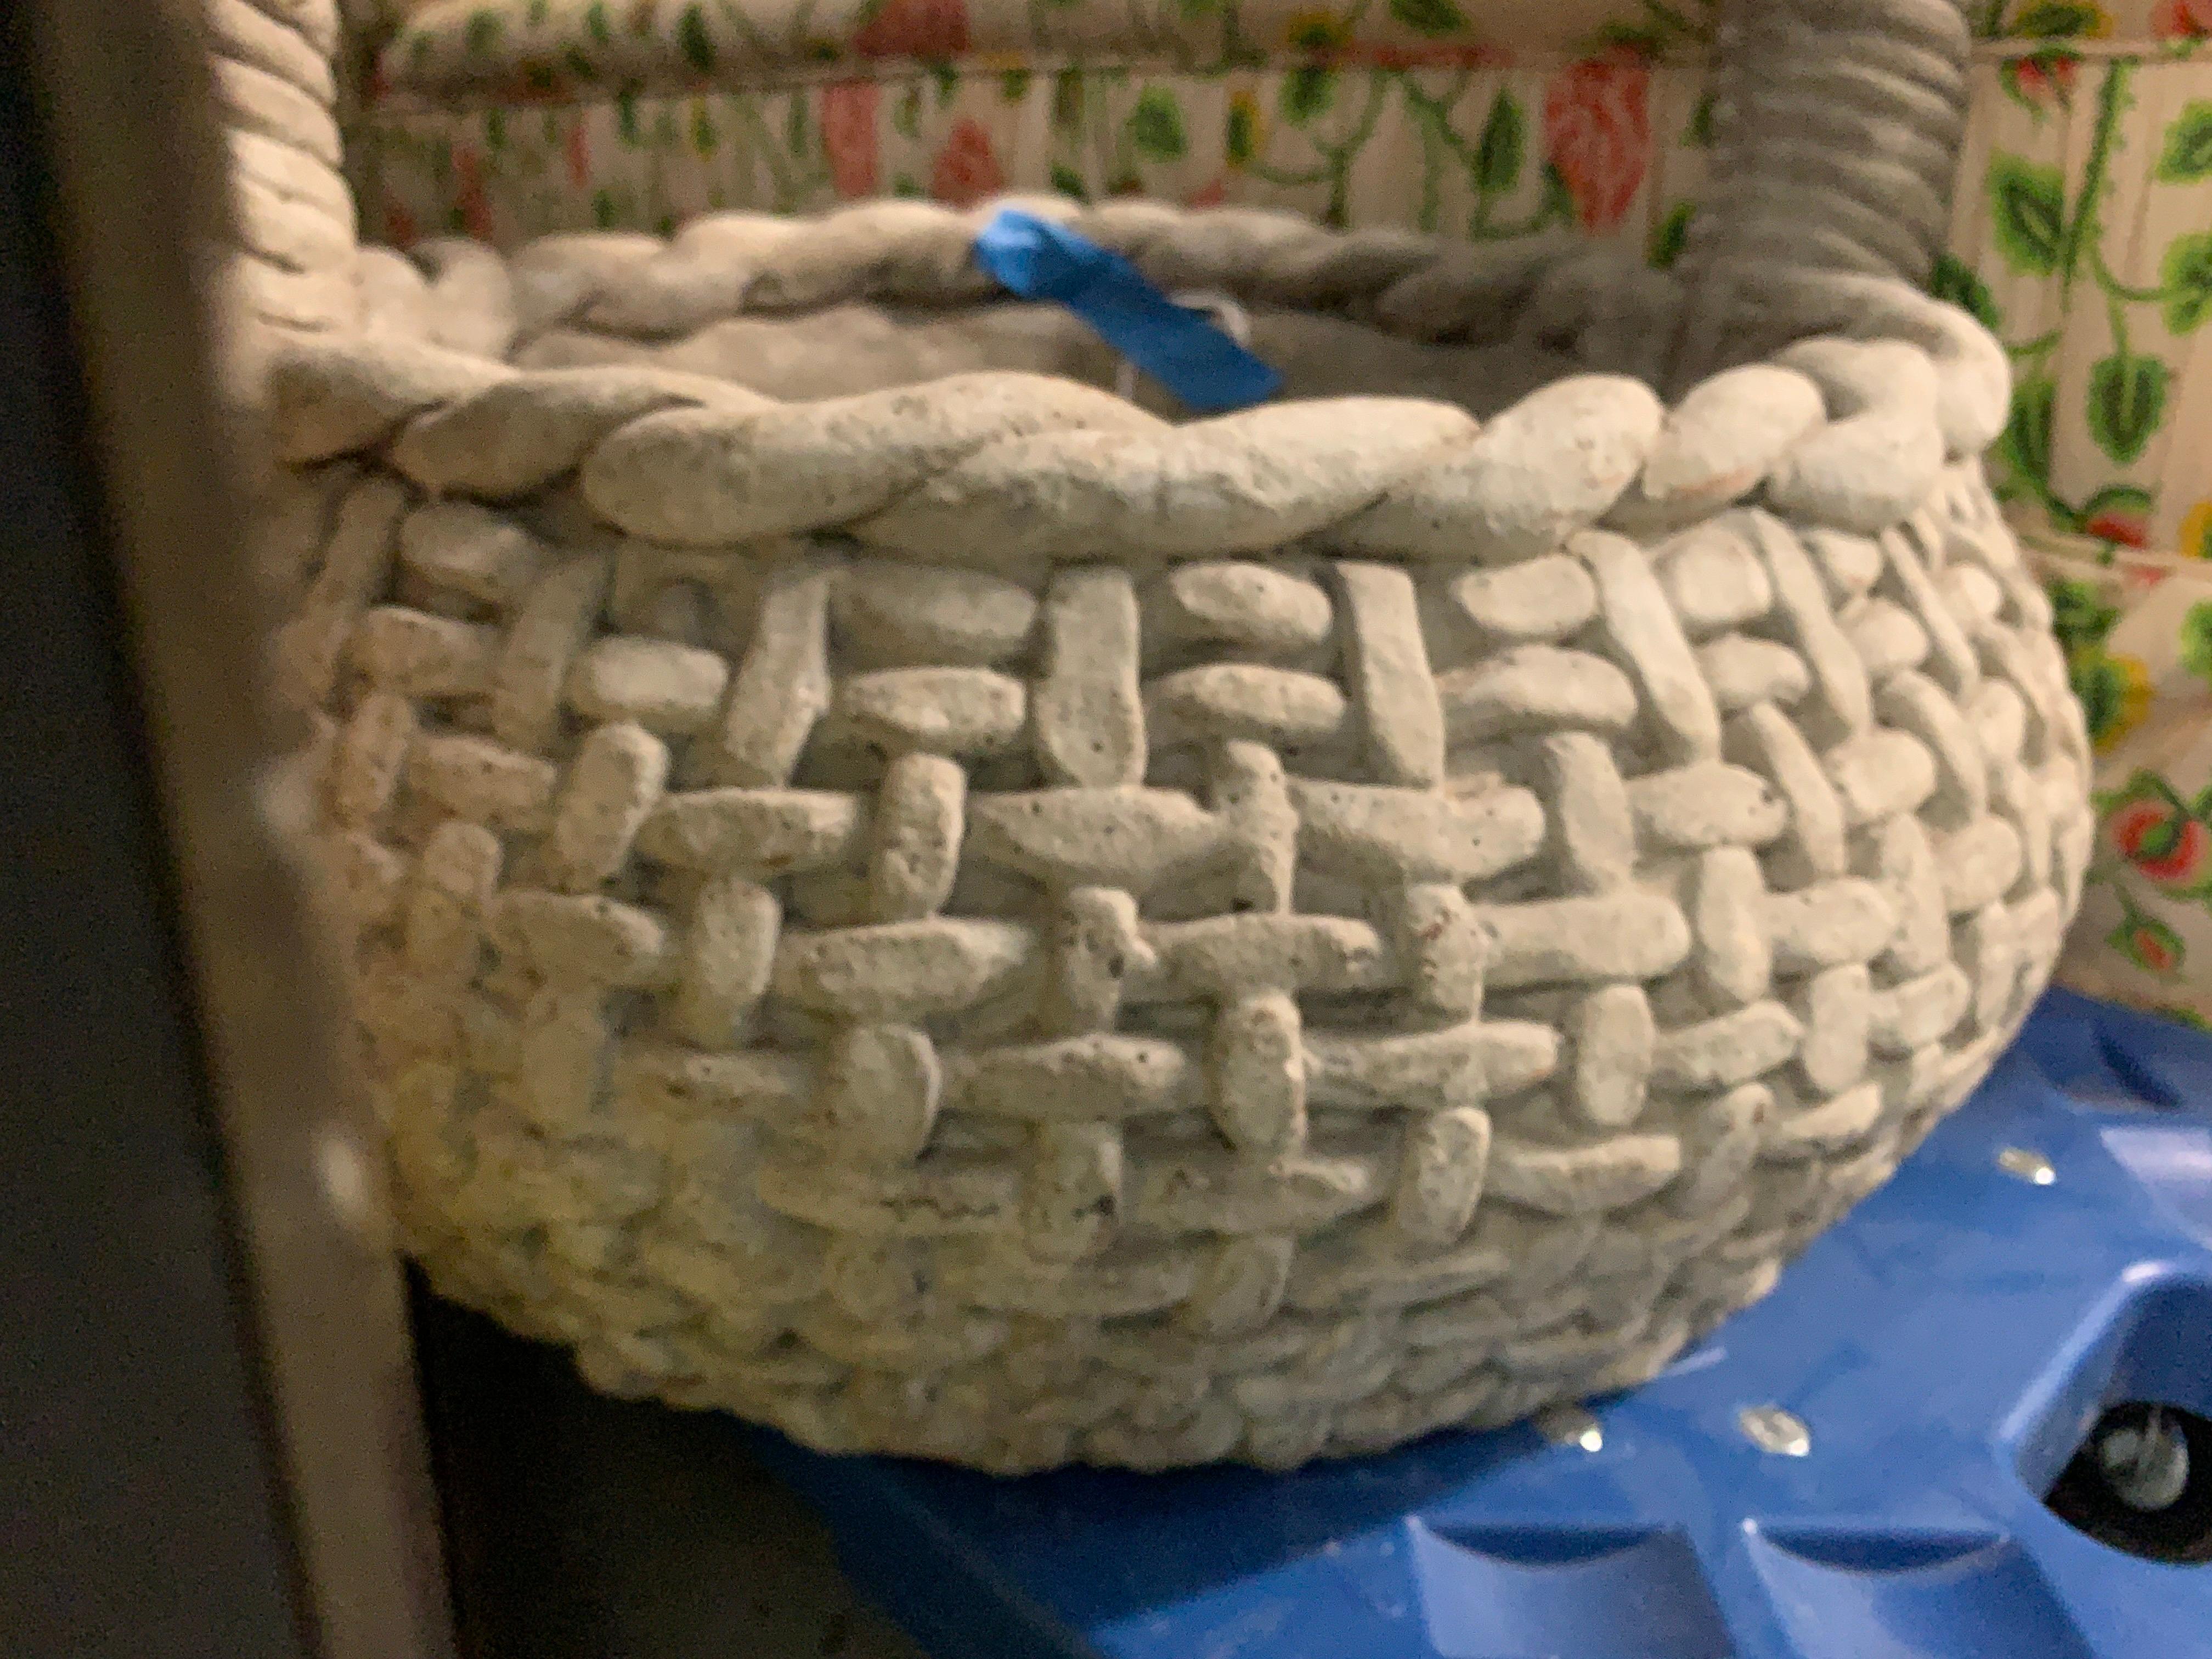 Large cast stone woven basket garden planter, with a twist handle. Adorable trompe l'oeil basket weave surface. 

Measures: 18